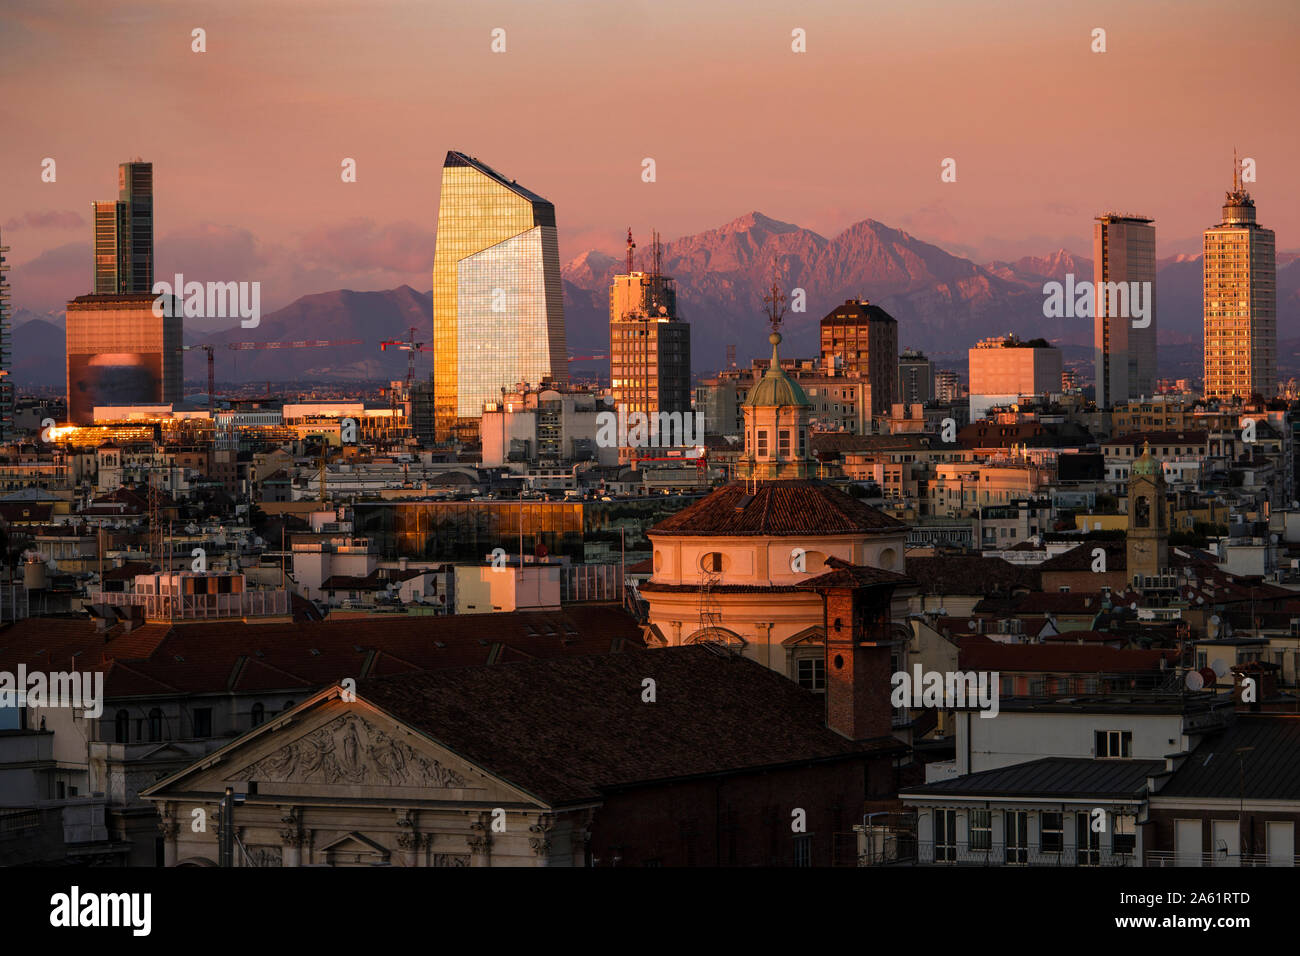 Lo skyline di Milano con grattacieli al tramonto. Vista aerea della città di Milano, Italia. Le Grigne mountain range (Lombardia Alpi) in background. Foto Stock